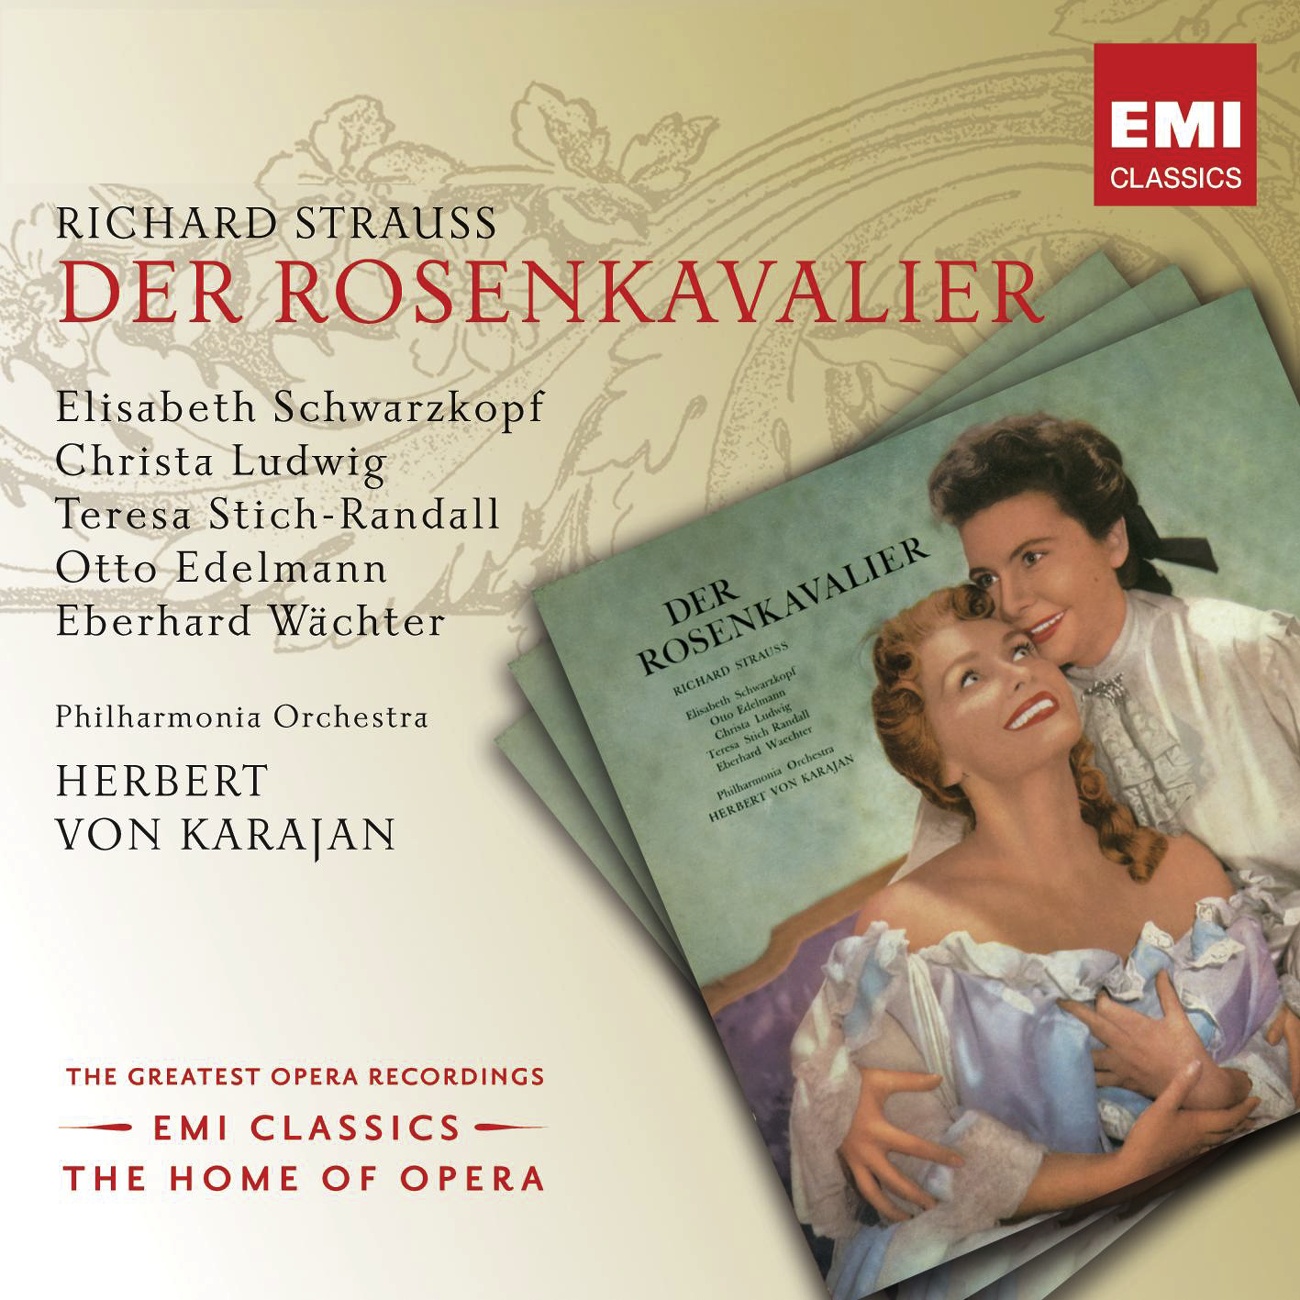 Der Rosenkavalier (2001 Digital Remaster), Act I: Dann ziehen wir ins Palais von Faninal (Ochs/Marschallin/Haushofmeister)